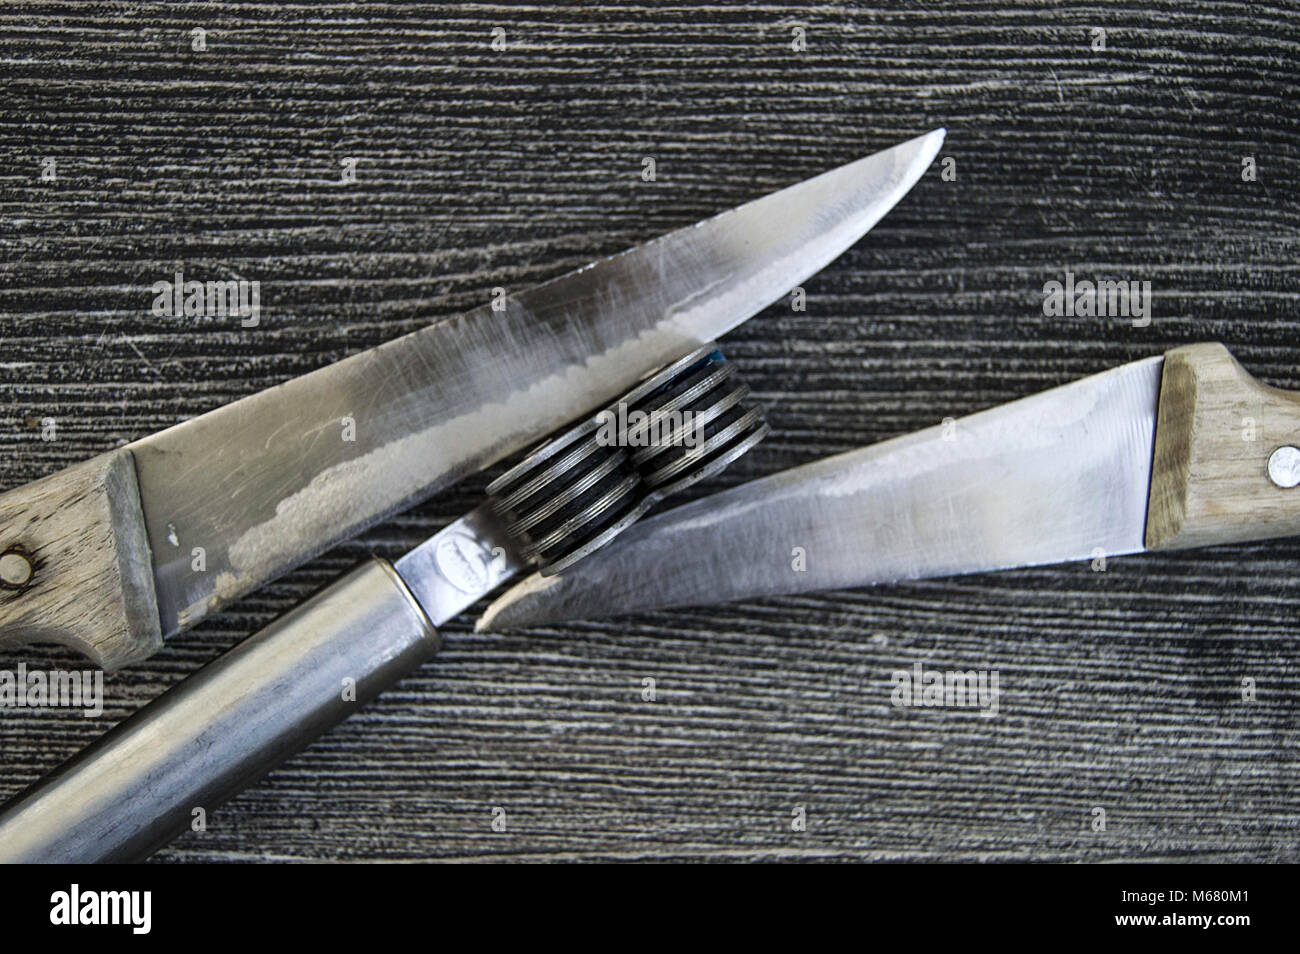 https://c8.alamy.com/compes/m680m1/las-cuchillas-se-erige-junto-a-la-hoja-de-molienda-herramienta-de-afilado-de-cuchillas-cuchillas-romas-afilado-con-herramientas-de-afilado-pulido-m680m1.jpg